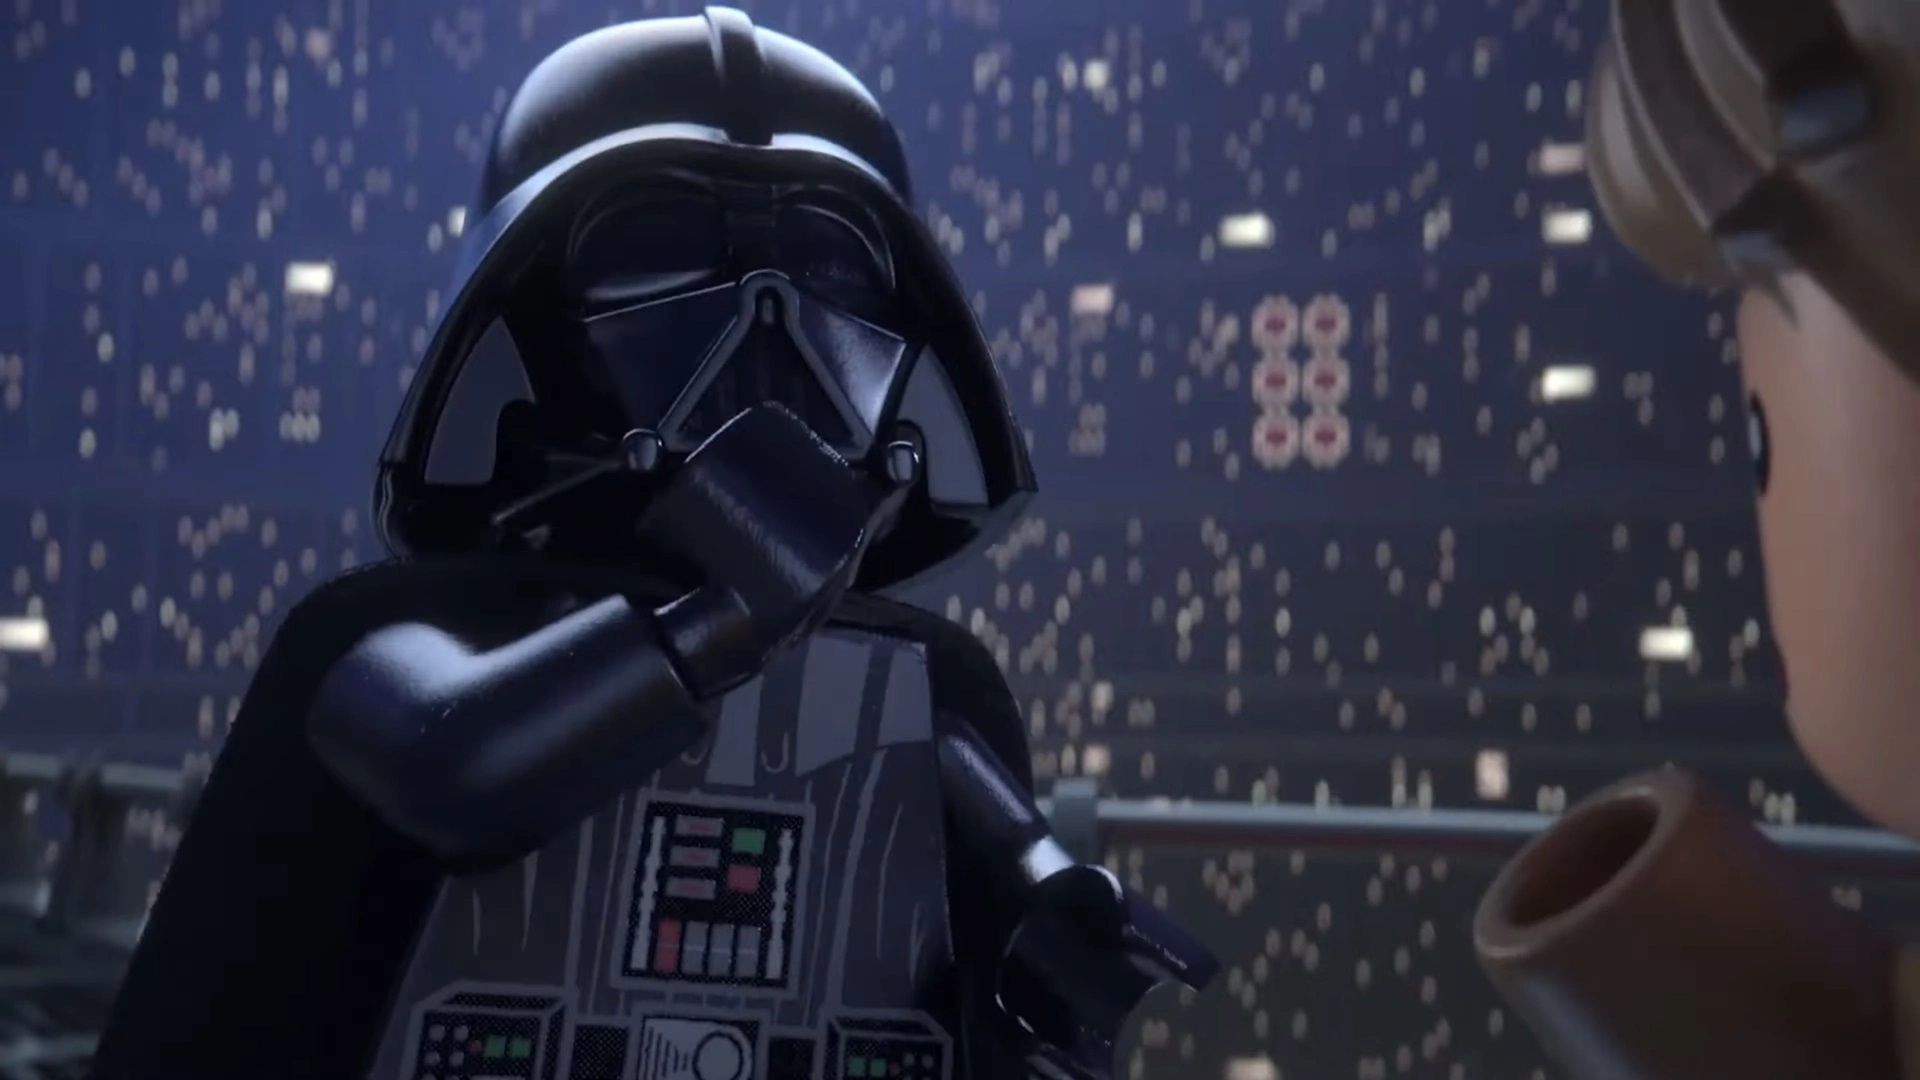 Mới ra mắt nhưng Lego Star Wars đã đứng ngang hàng về độ hot với GTA V trên Steam